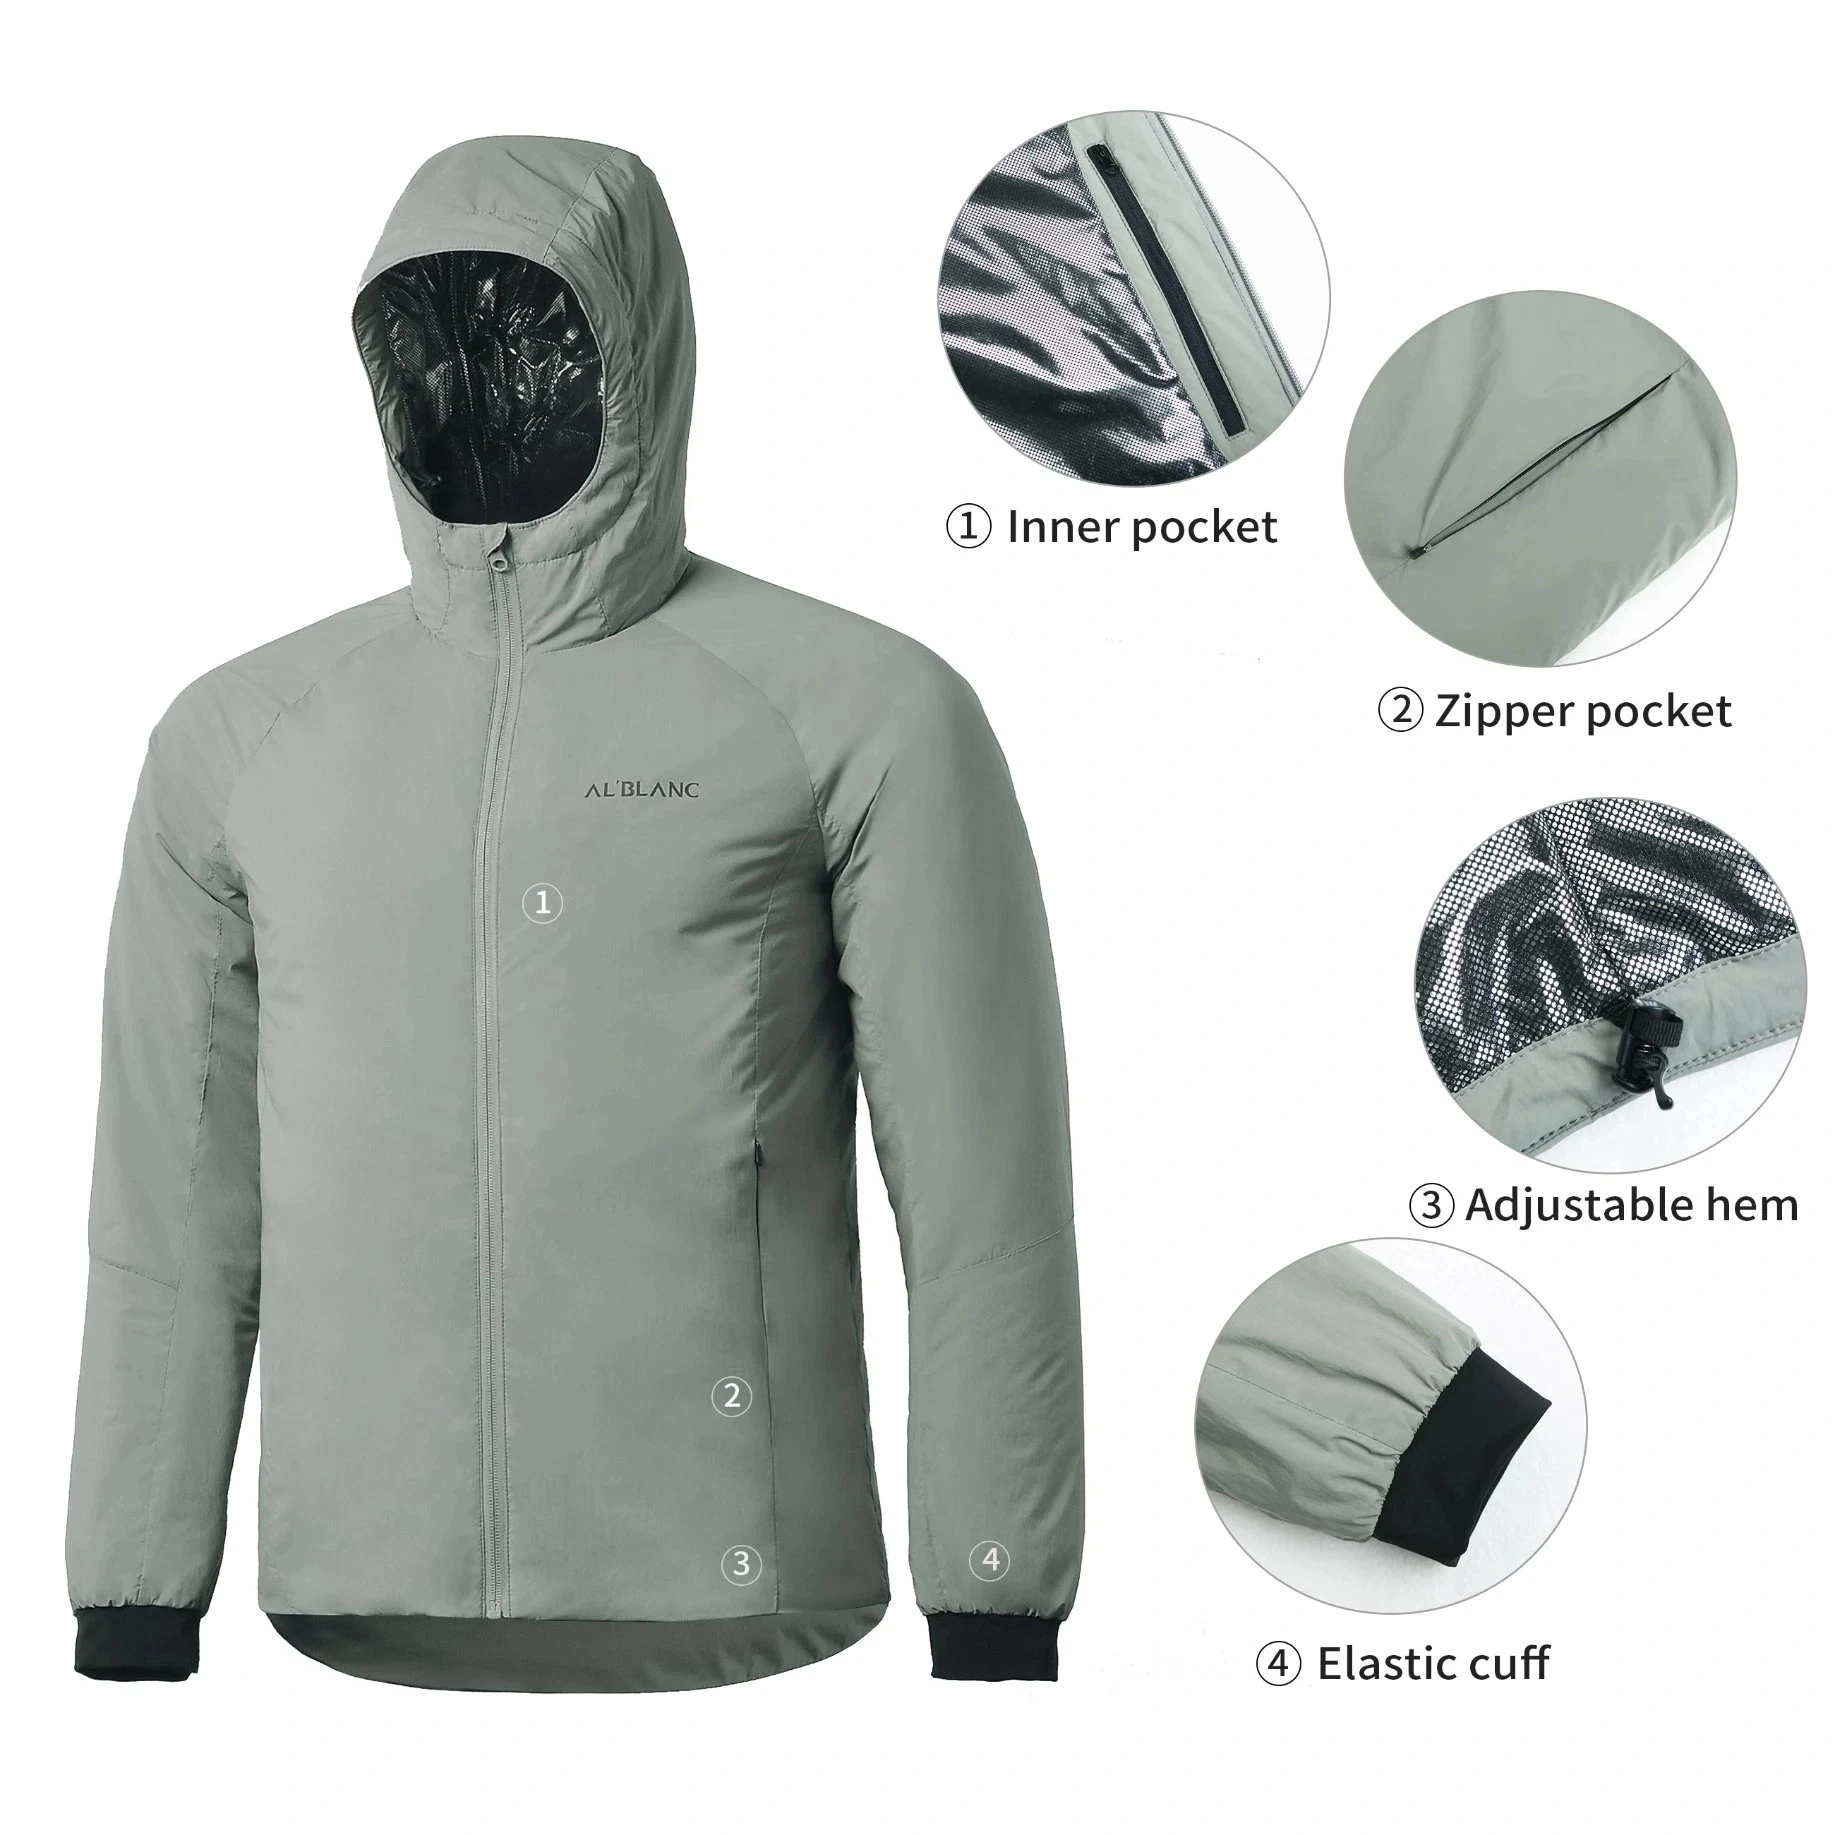 Los hombres ropa de abrigo impermeable al aire libre revestimiento de poliéster cálido invierno ropa deportiva de relleno hacia abajo chaqueta con capucha